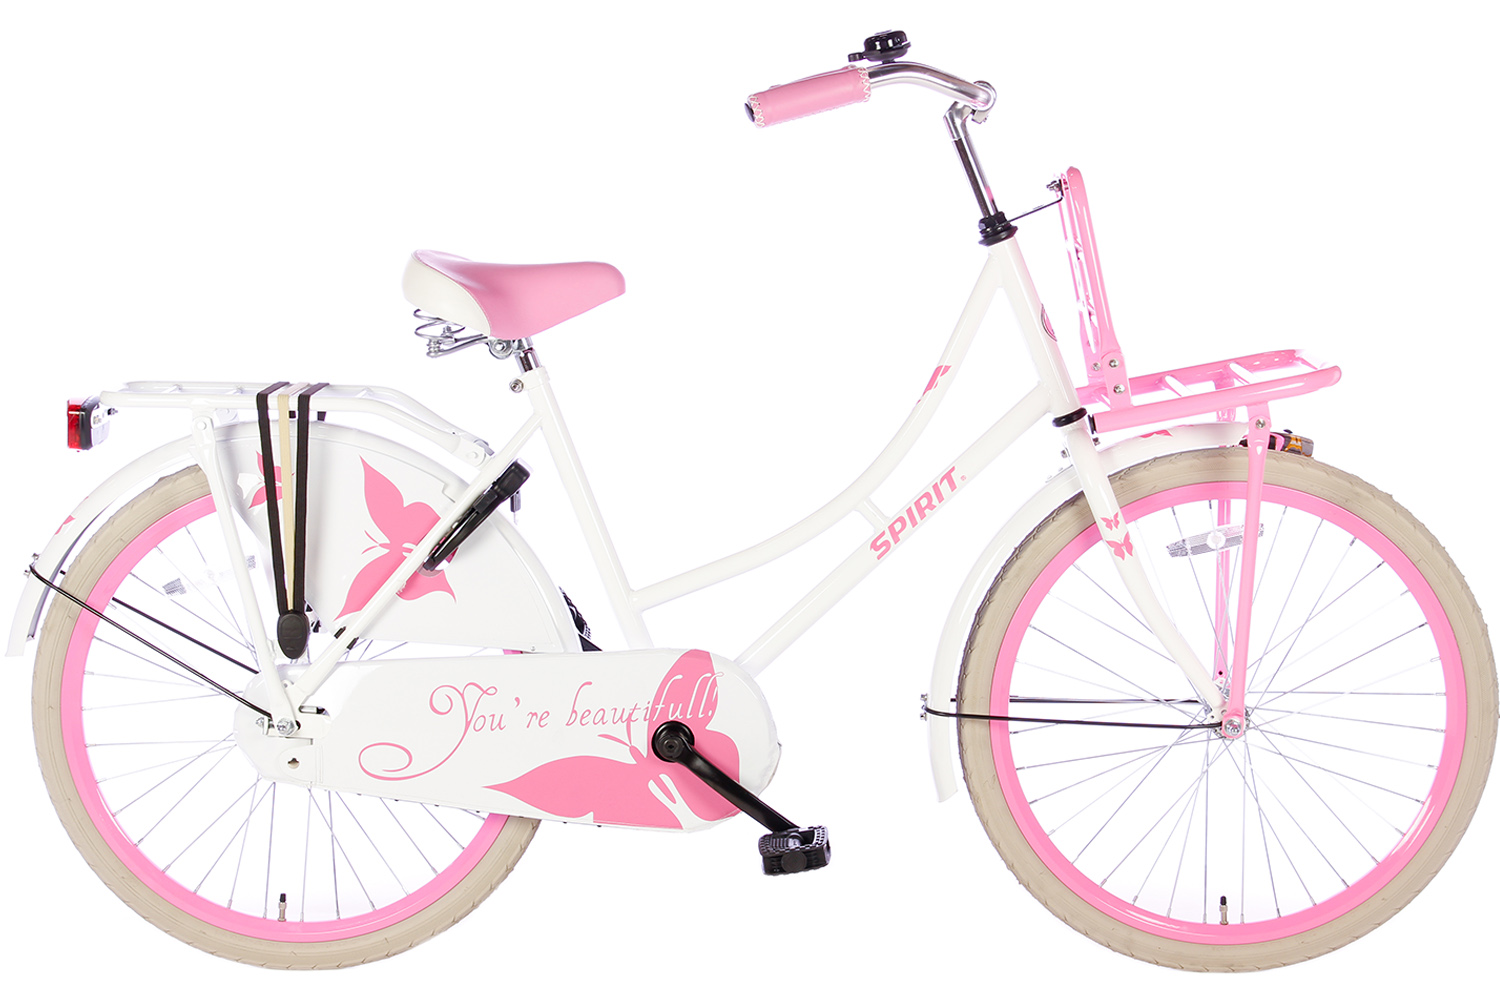 schot Regeringsverordening Avonturier Spirit Omafiets Wit-Roze 24 inch(wordt 100%rijklaar geleverd) - Bike 2 Bike